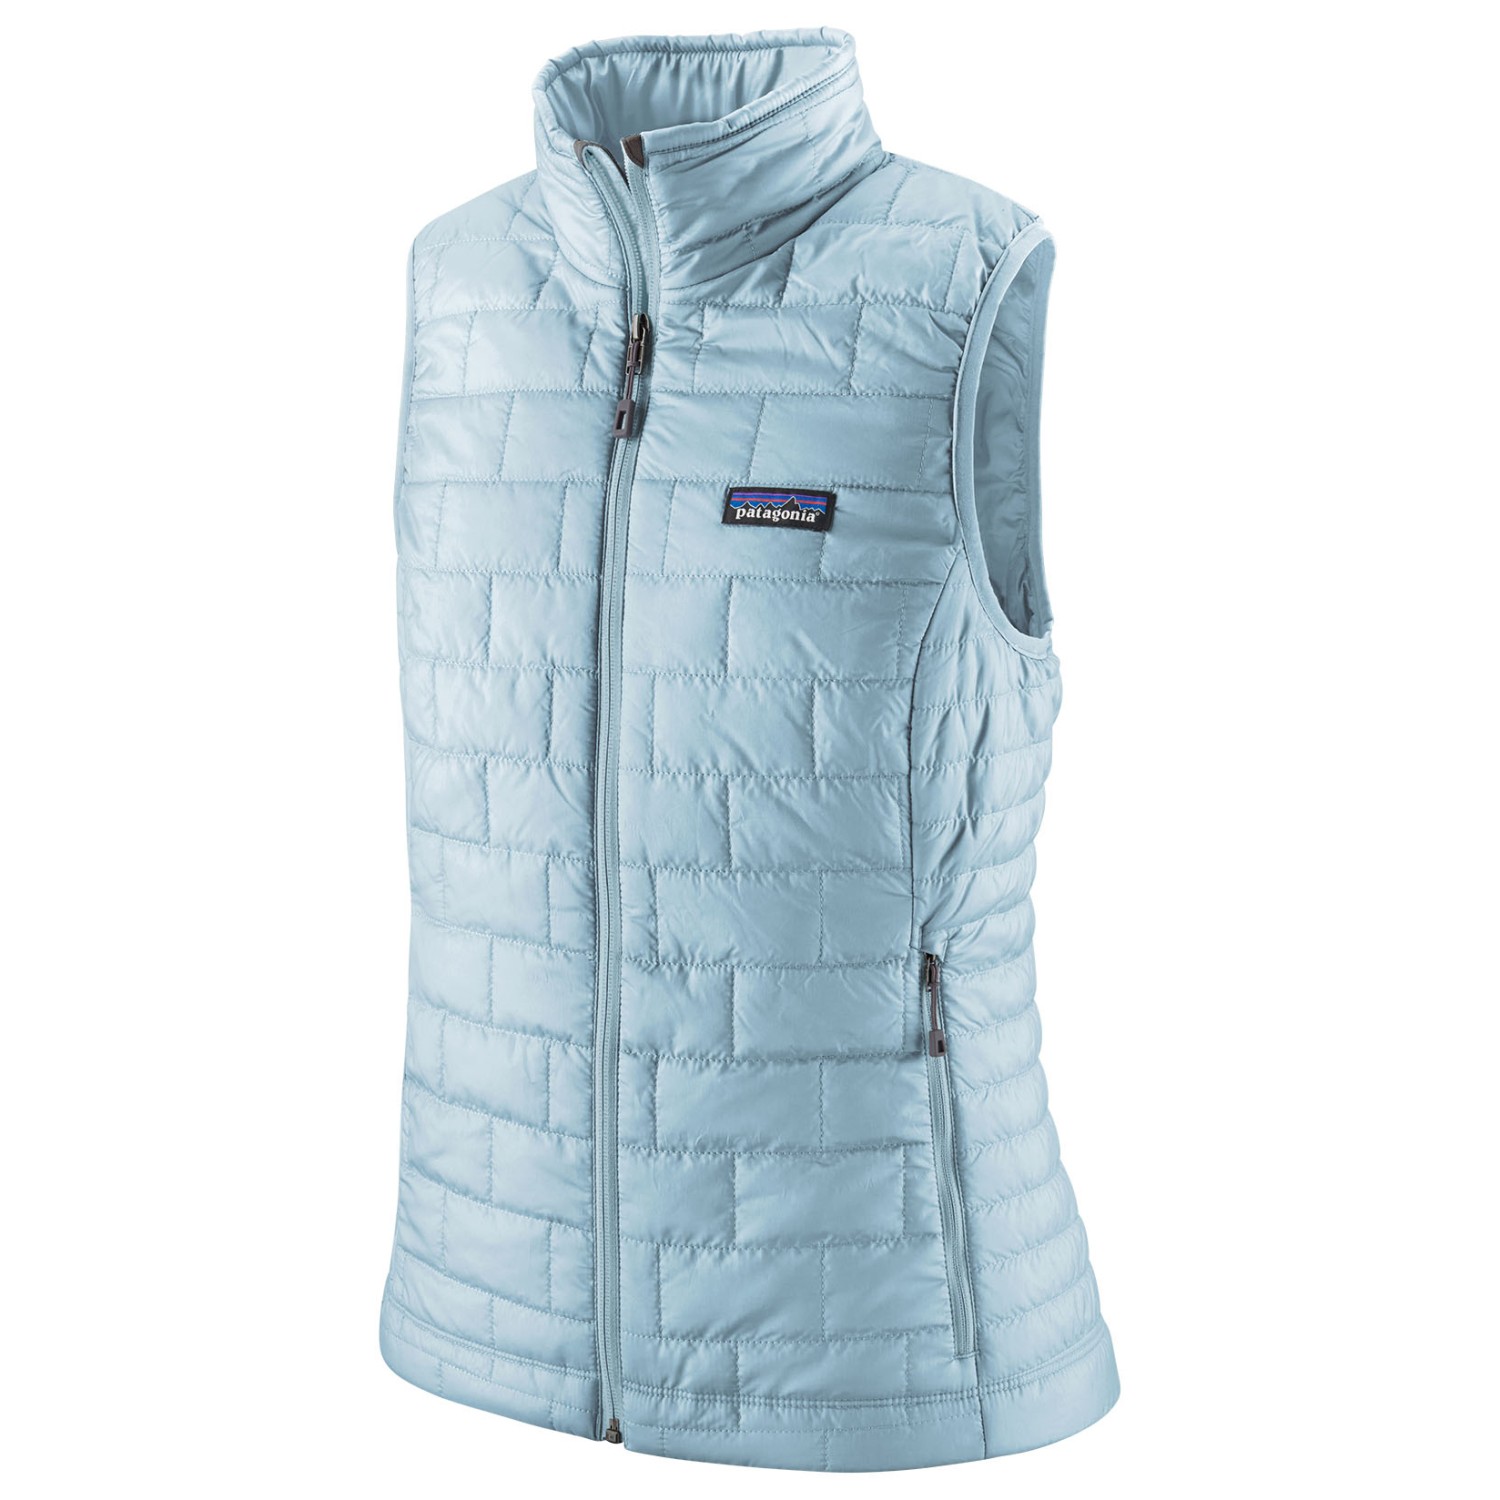 Жилет из синтетического волокна Patagonia Women's Nano Puff Vest, цвет Chilled Blue жилет из синтетического волокна tentree puffer vest цвет meteorite black